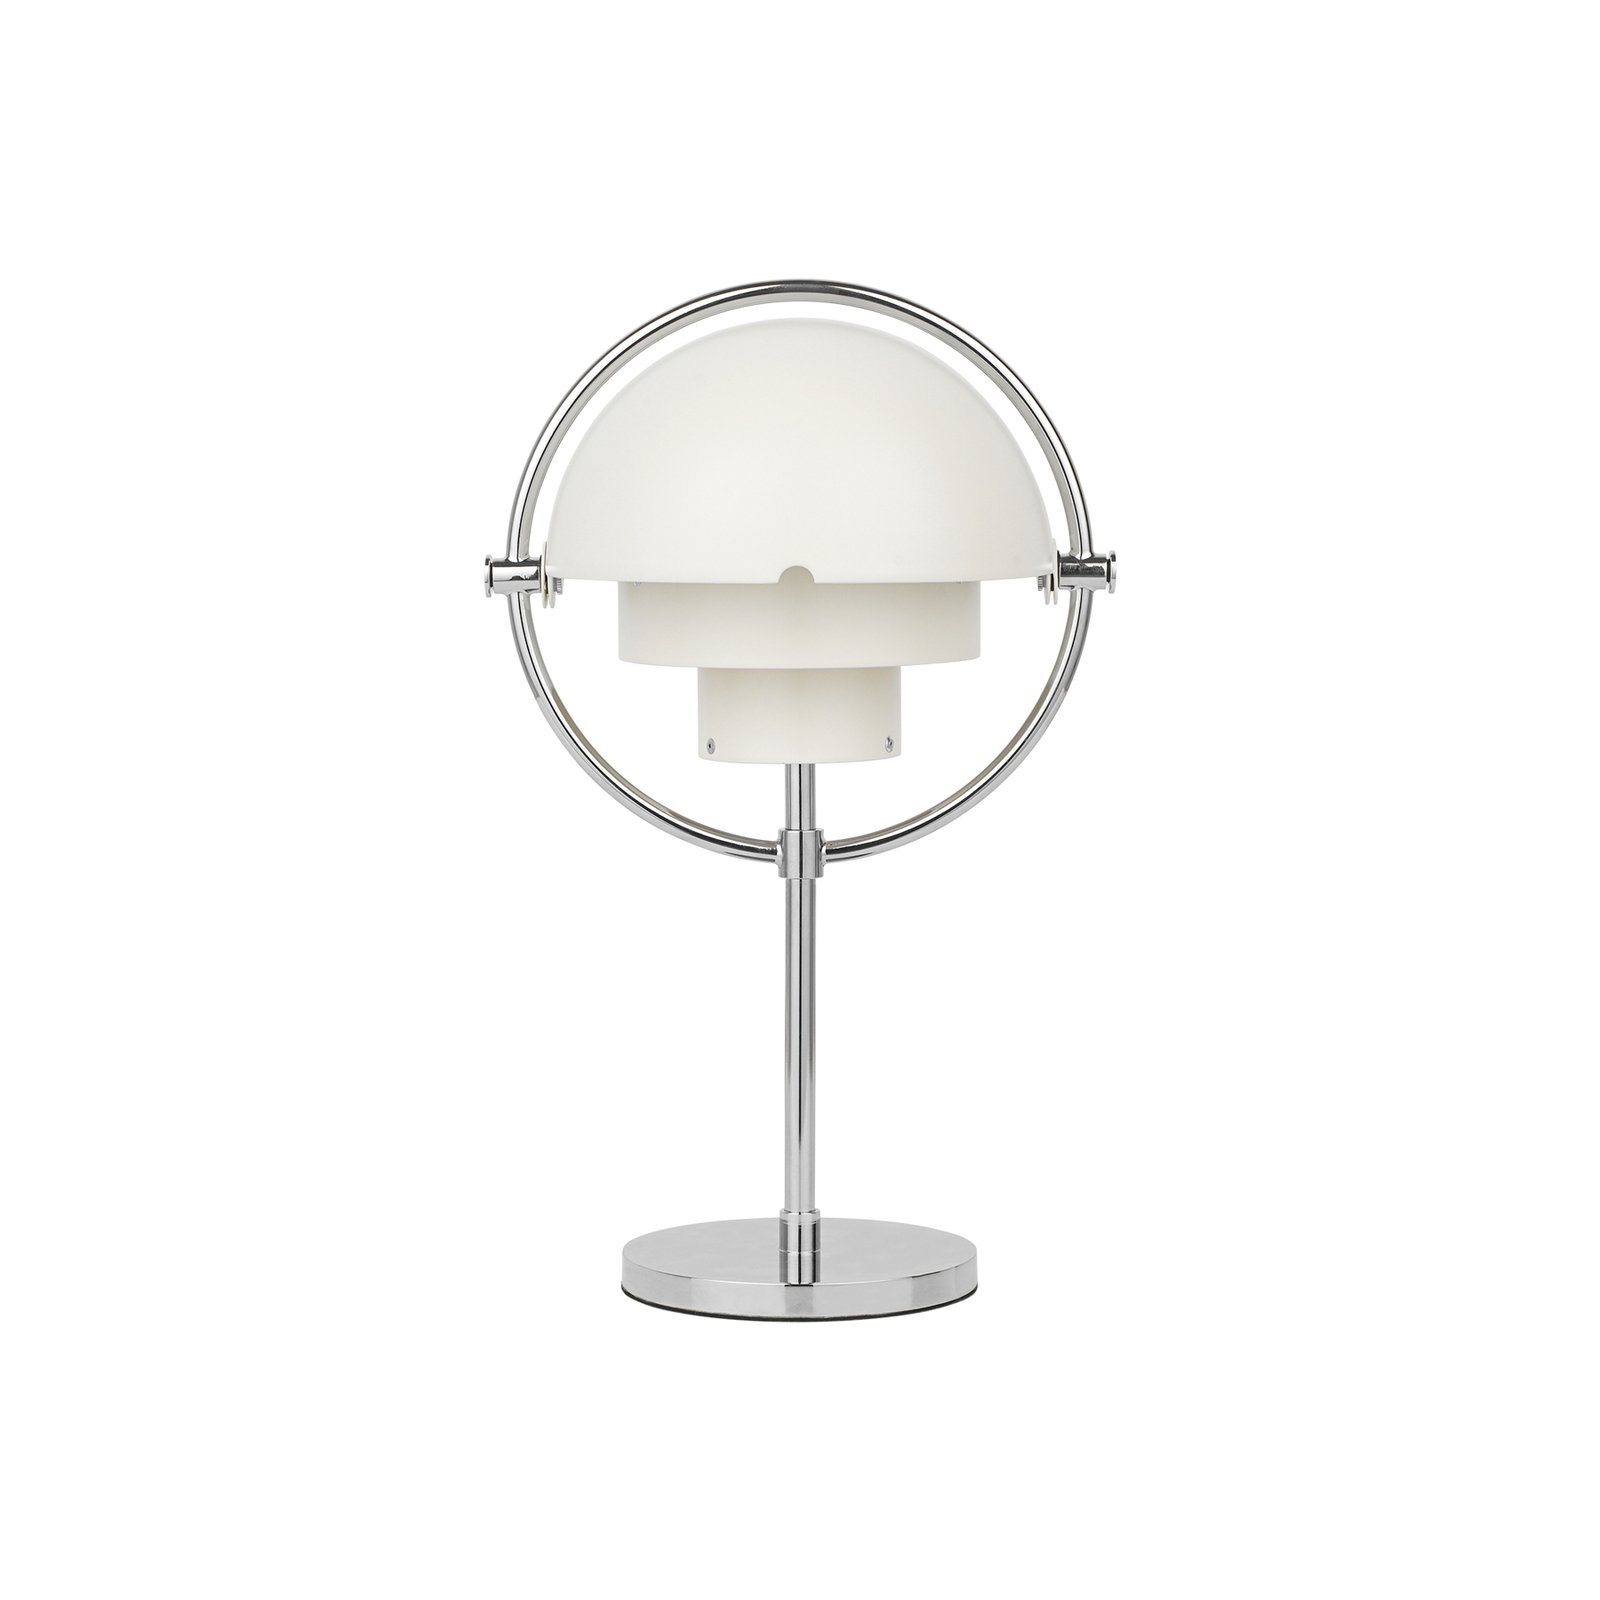 GUBI Multi-Lite oppladbar bordlampe, høyde 30 cm, krom/hvit